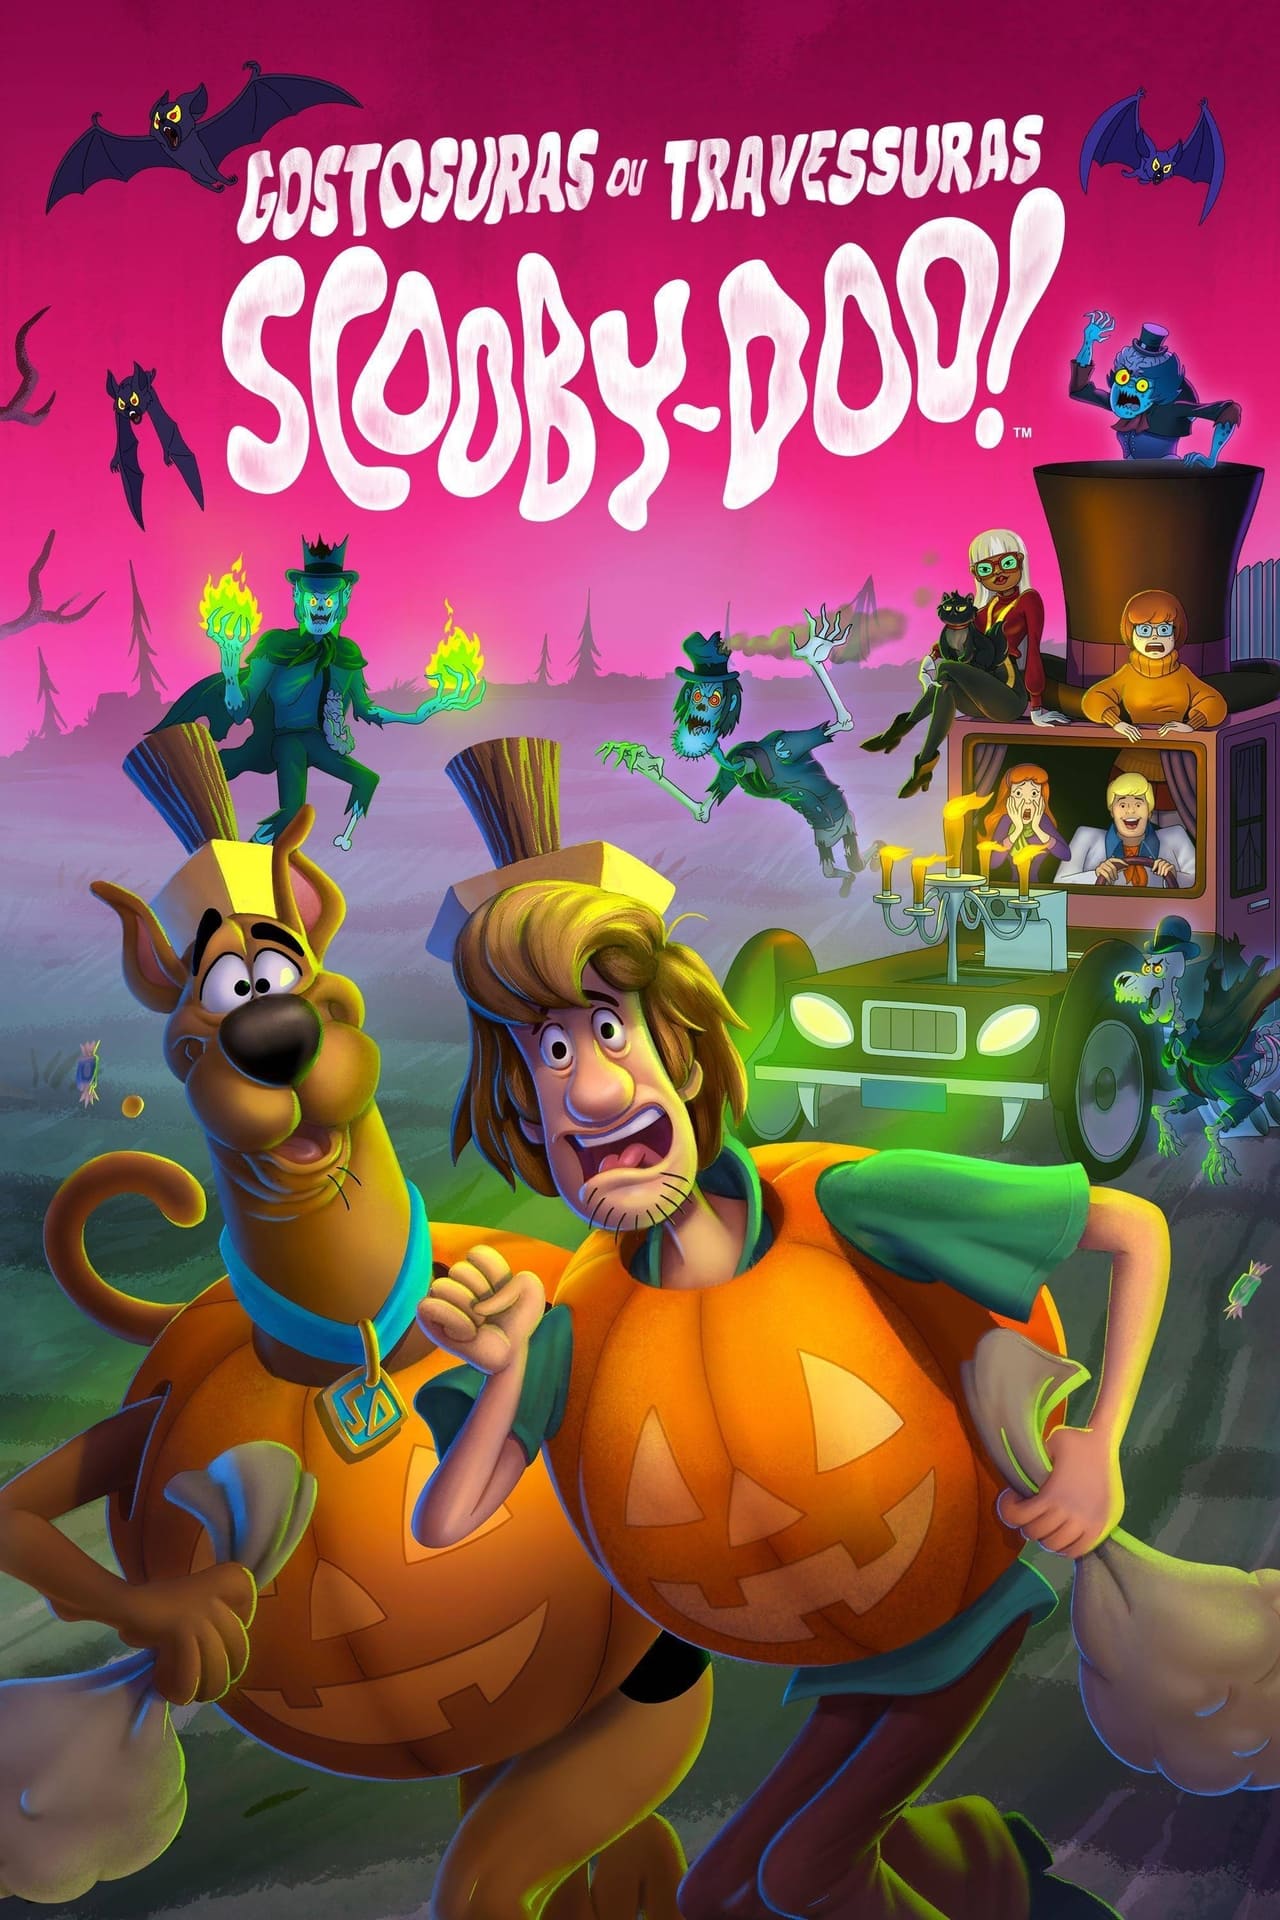 Scooby-Doo! Gostosuras ou Travessuras Dublado Online